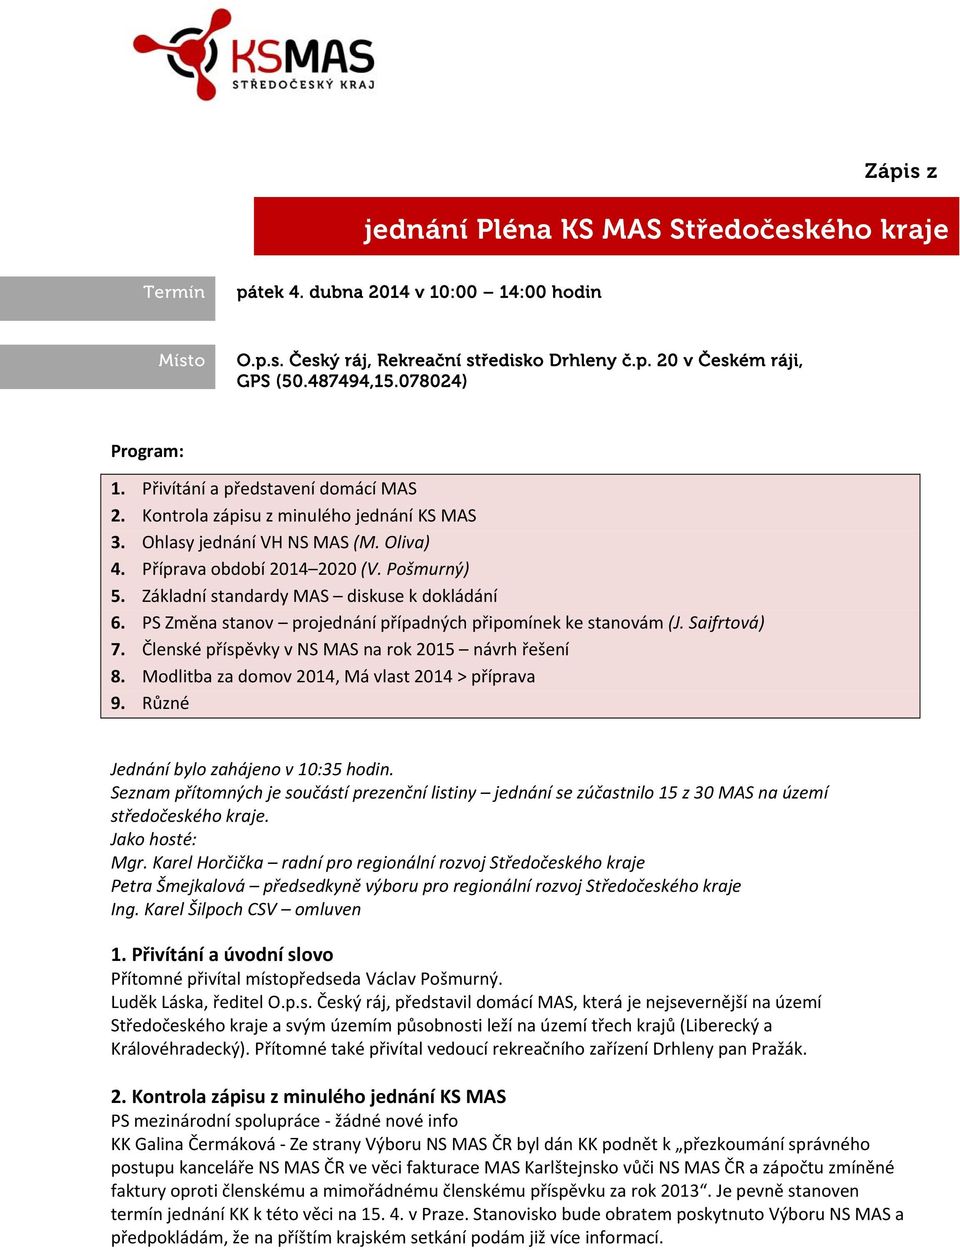 Základní standardy diskuse k dokládání 6. PS Změna stanov projednání případných připomínek ke stanovám (J. Saifrtová) 7. Členské příspěvky v NS na rok 2015 návrh řešení 8.